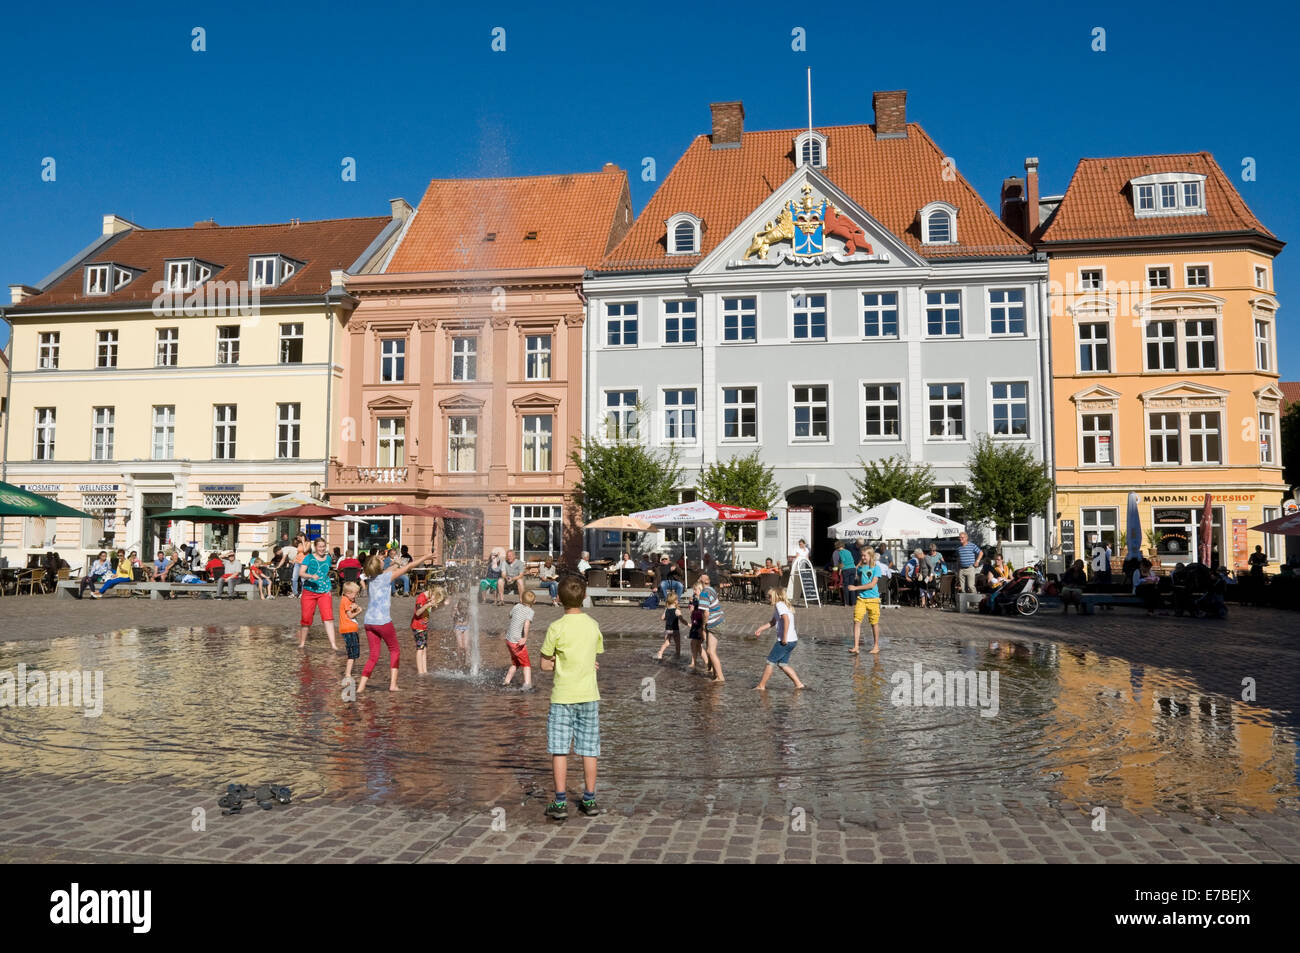 Kinder spielen in den Brunnen am alten Marktplatz in Stralsund, Deutschland. Stockfoto